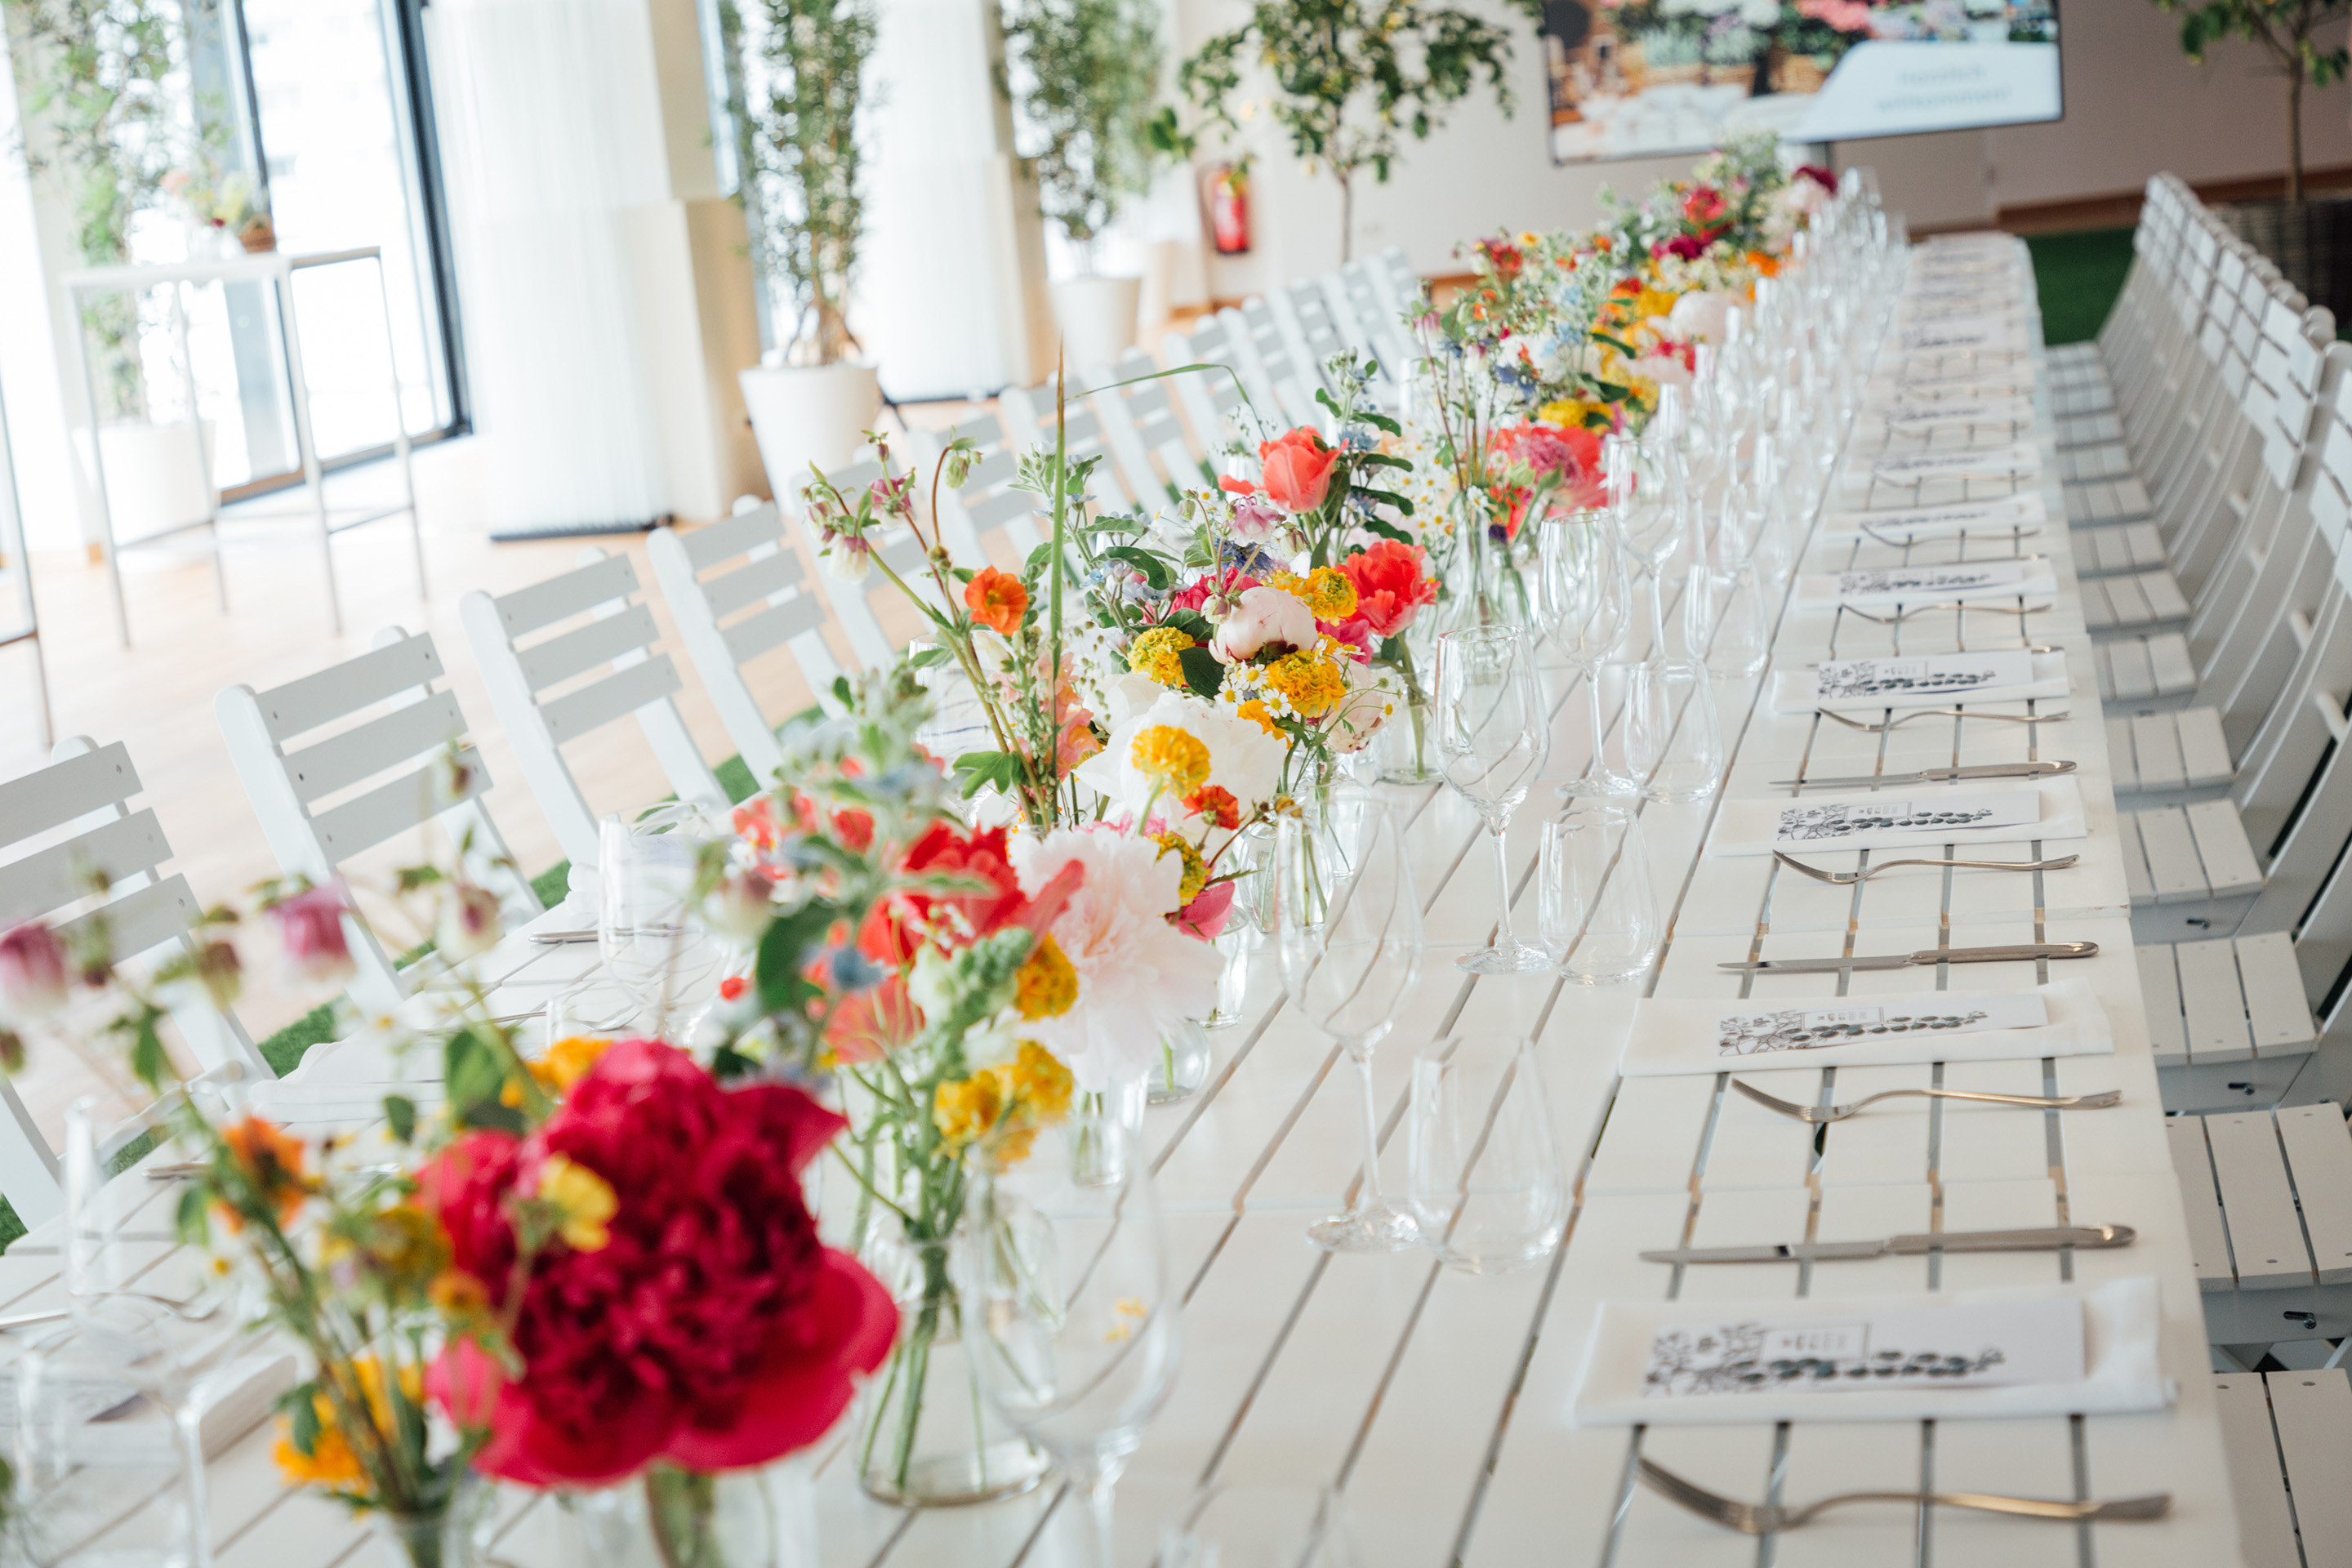 Foto: Weißer gedeckter Tisch mit Blumenschmuck